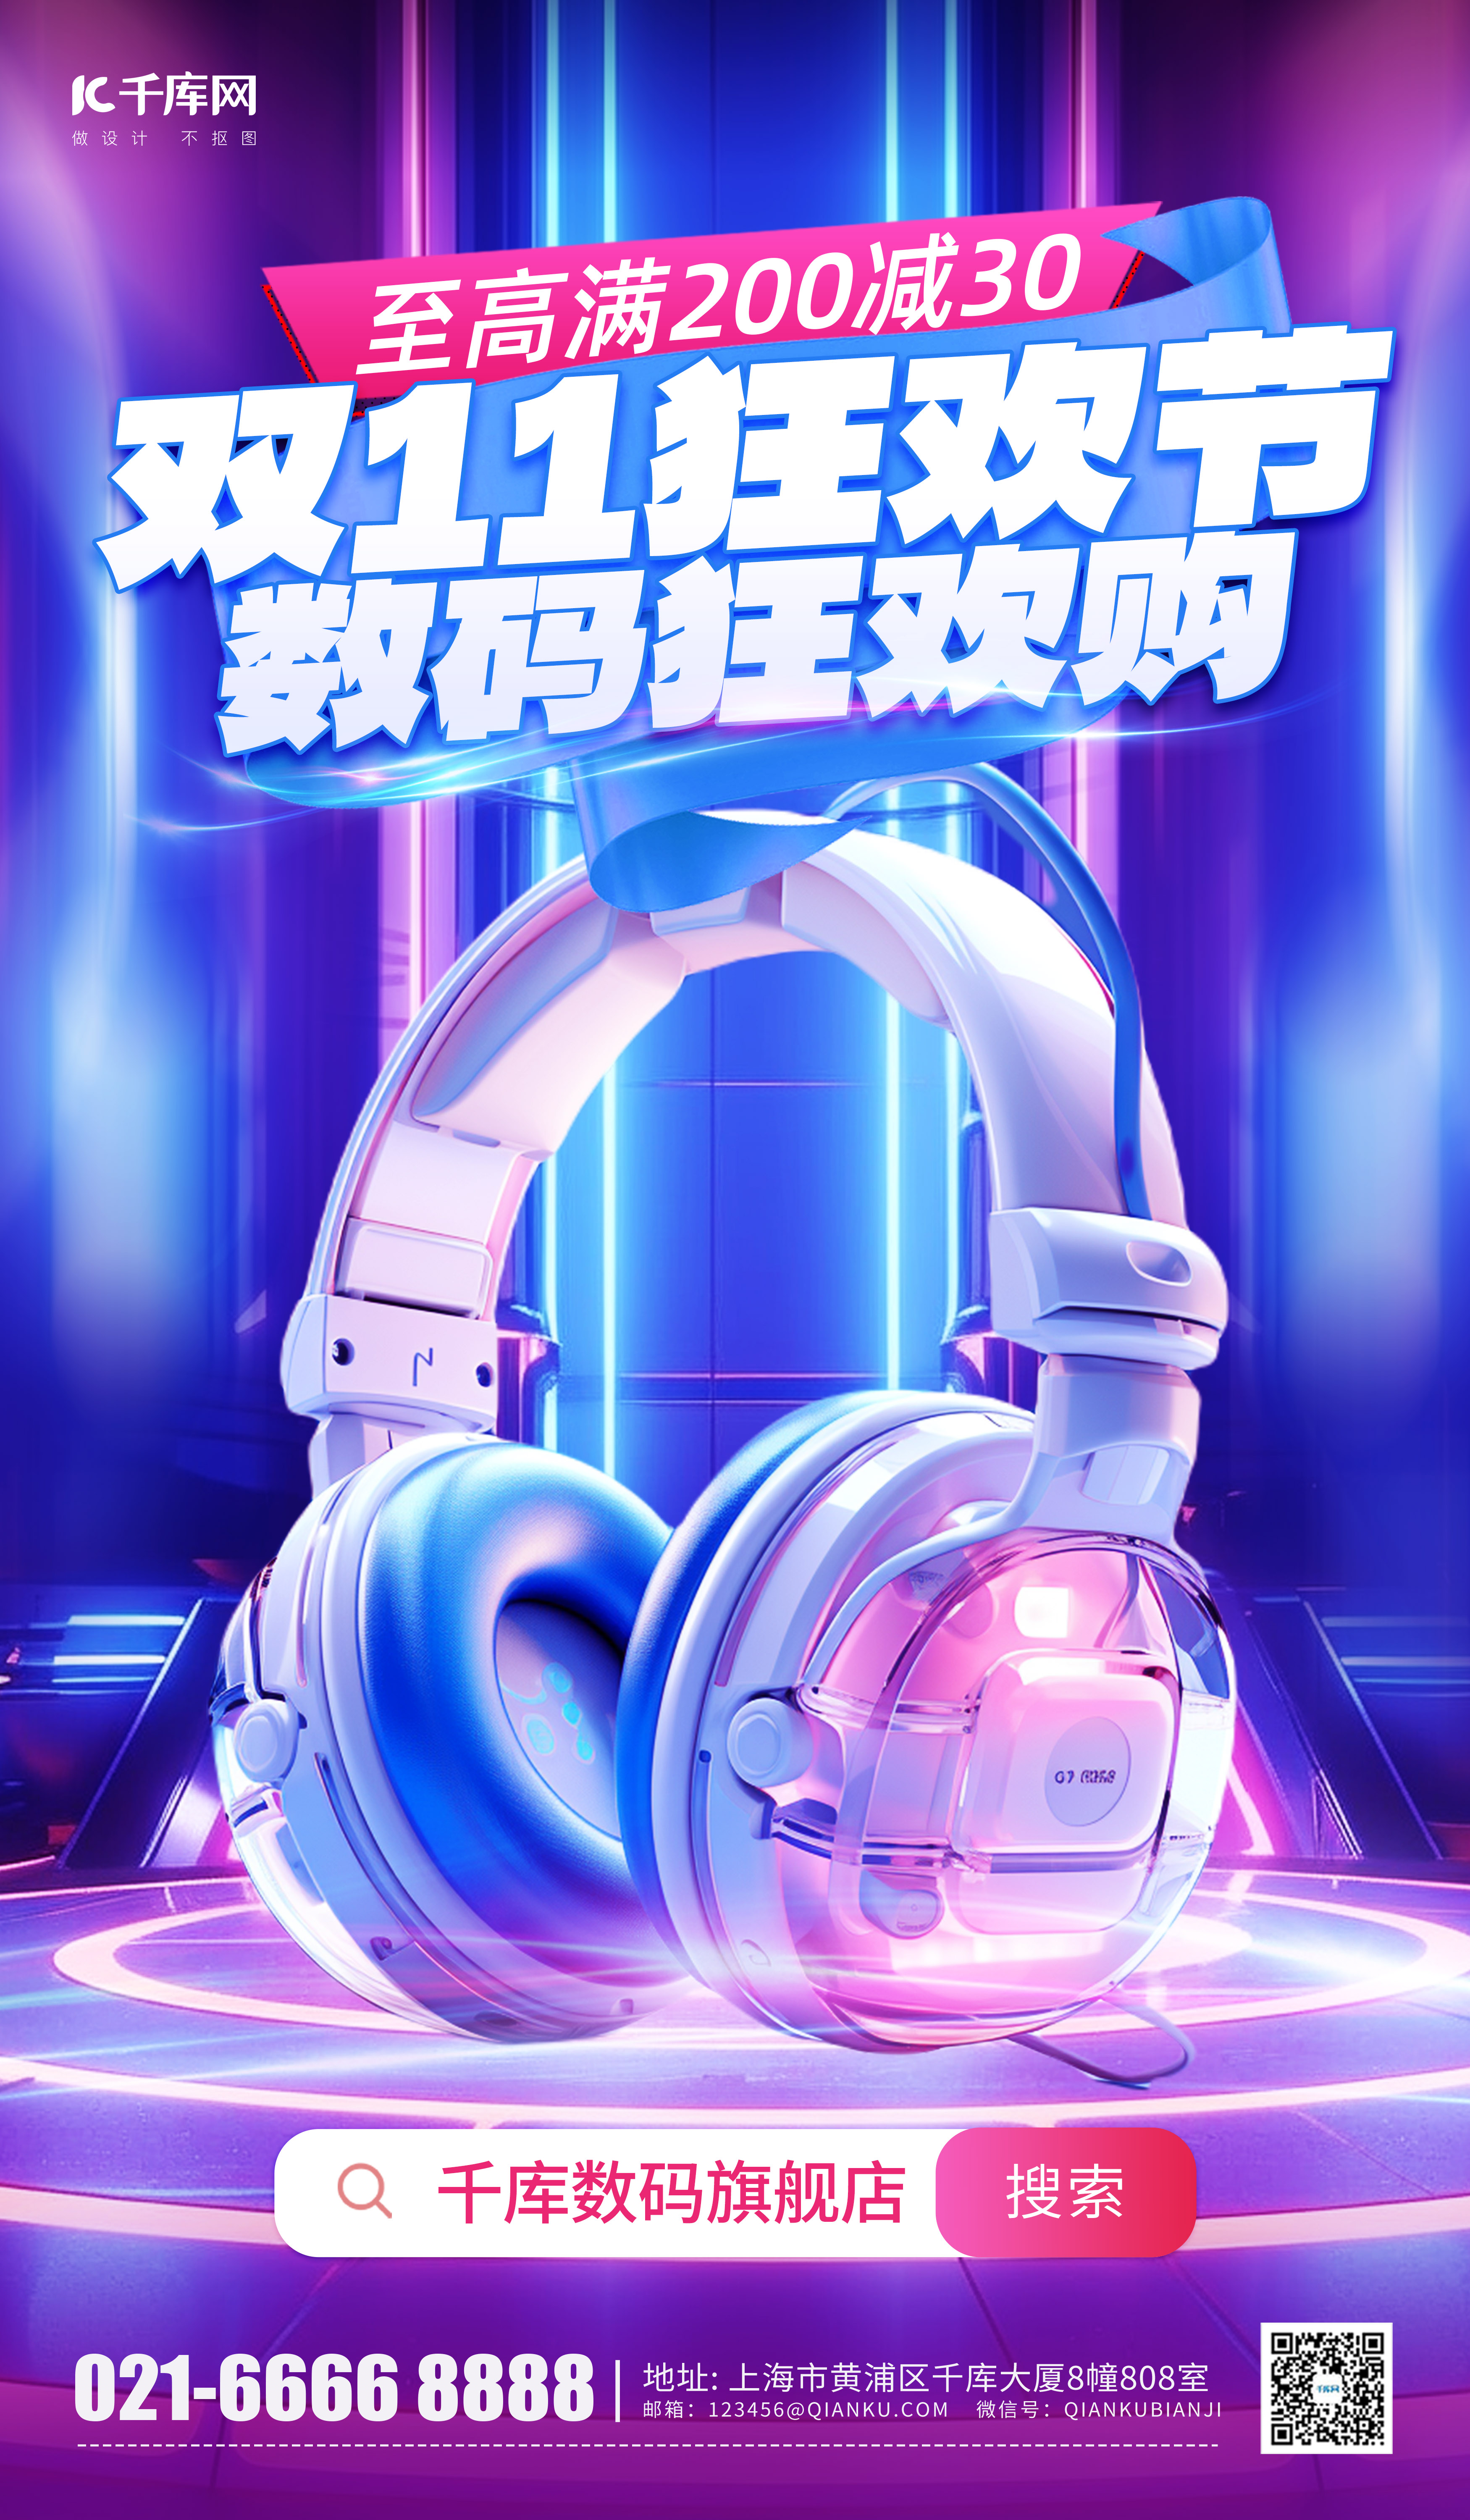 双11狂欢节耳机数码蓝色简约电商海报图片